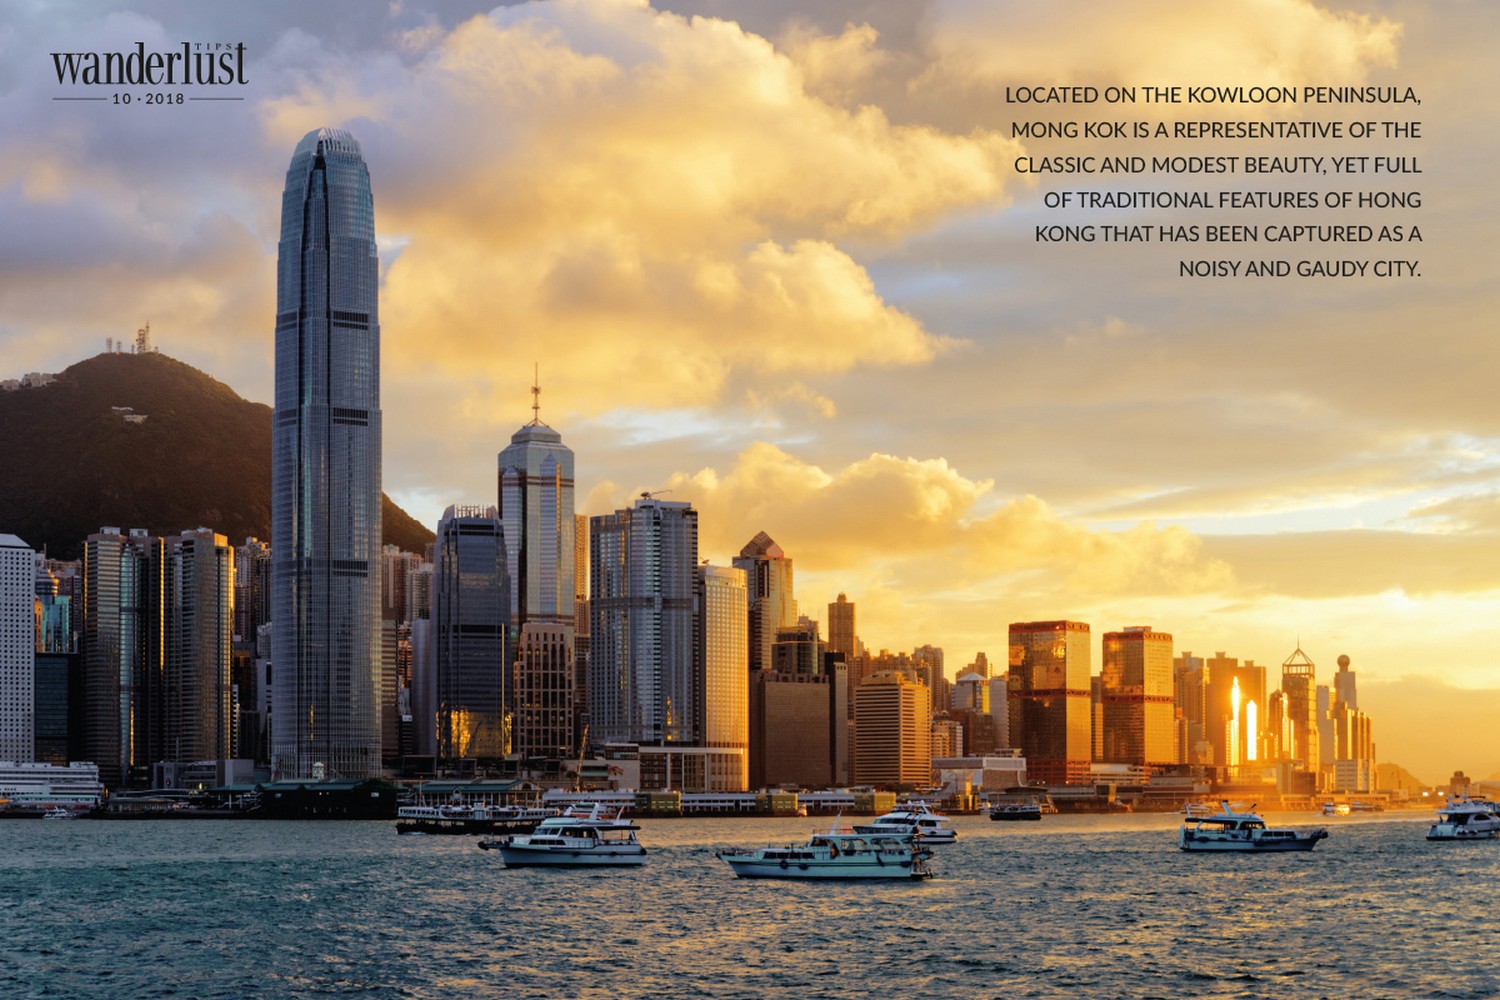 Wanderlust Tips Magazine | A classic Hong Kong in the heart of Mong Kok